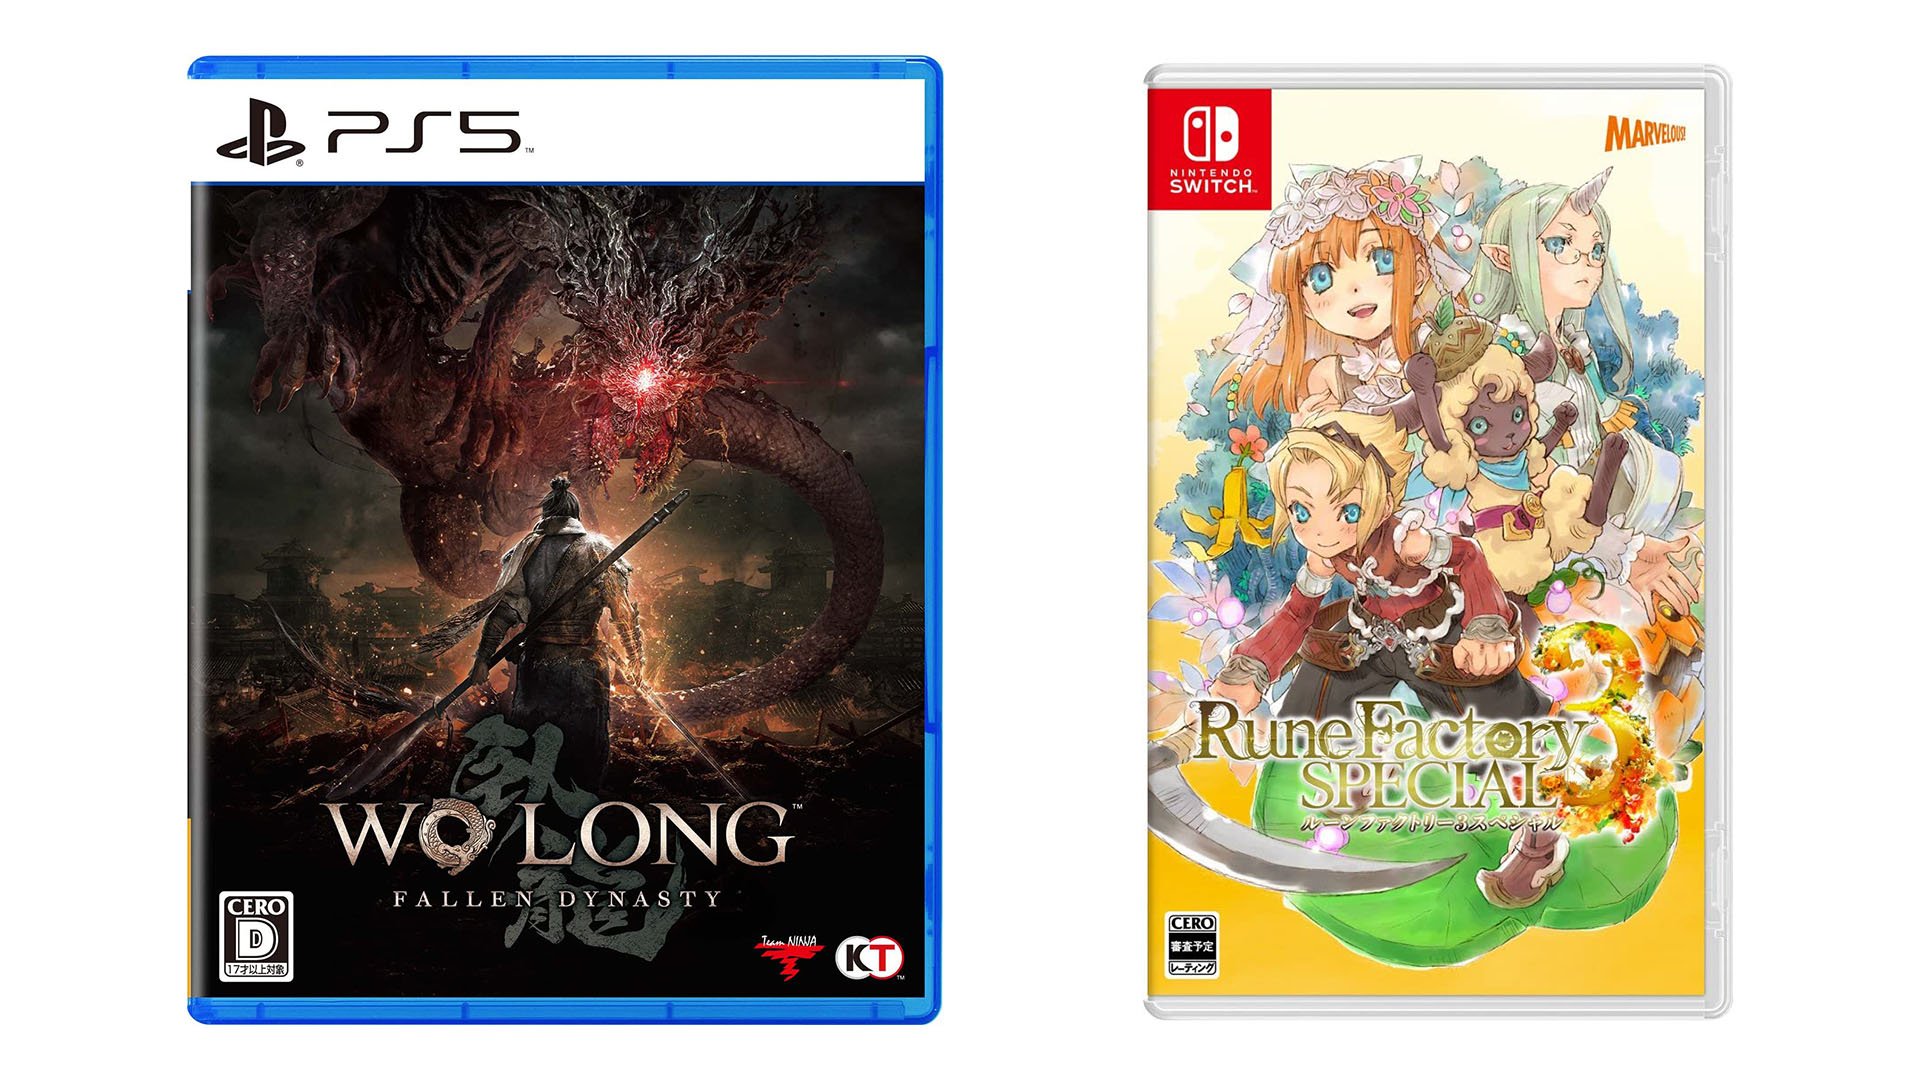 إصدارات اللعبة اليابانية لهذا الأسبوع: Wo Long: Fallen Dynasty و Rune Factory 3 Special والمزيد